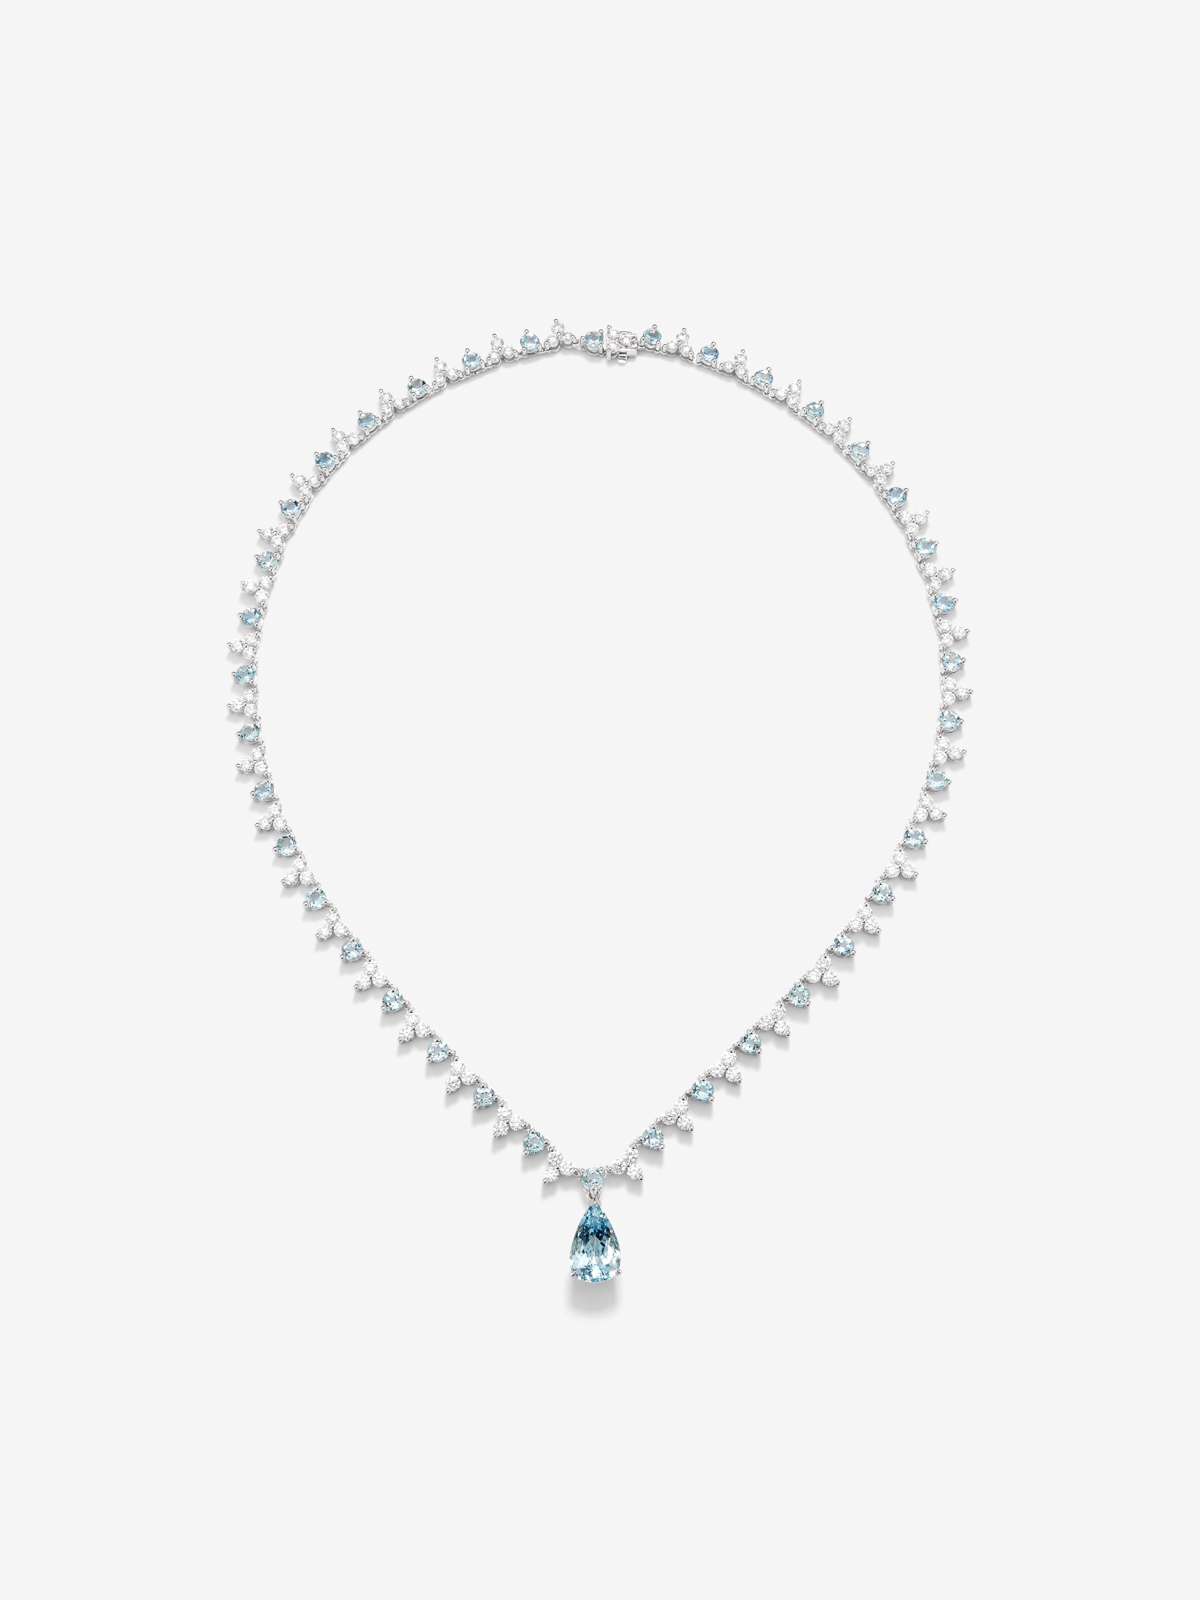 Collar rivière de oro blanco de 18K con aguamarina azul en talla pera de 3 cts, aguamarinas azules en talla brillante de 5,7 cts y diamantes blancos en talla brillante de 6,25 cts